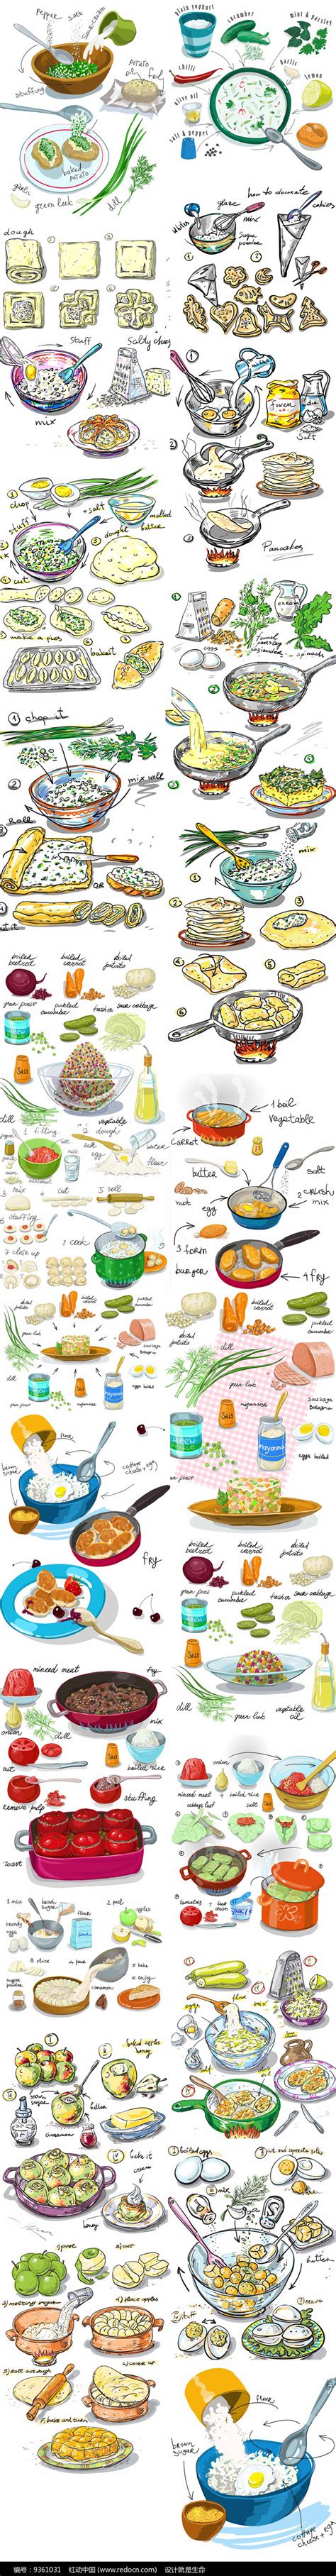 包鸡蛋粽子菜谱,端午节如何包粽子